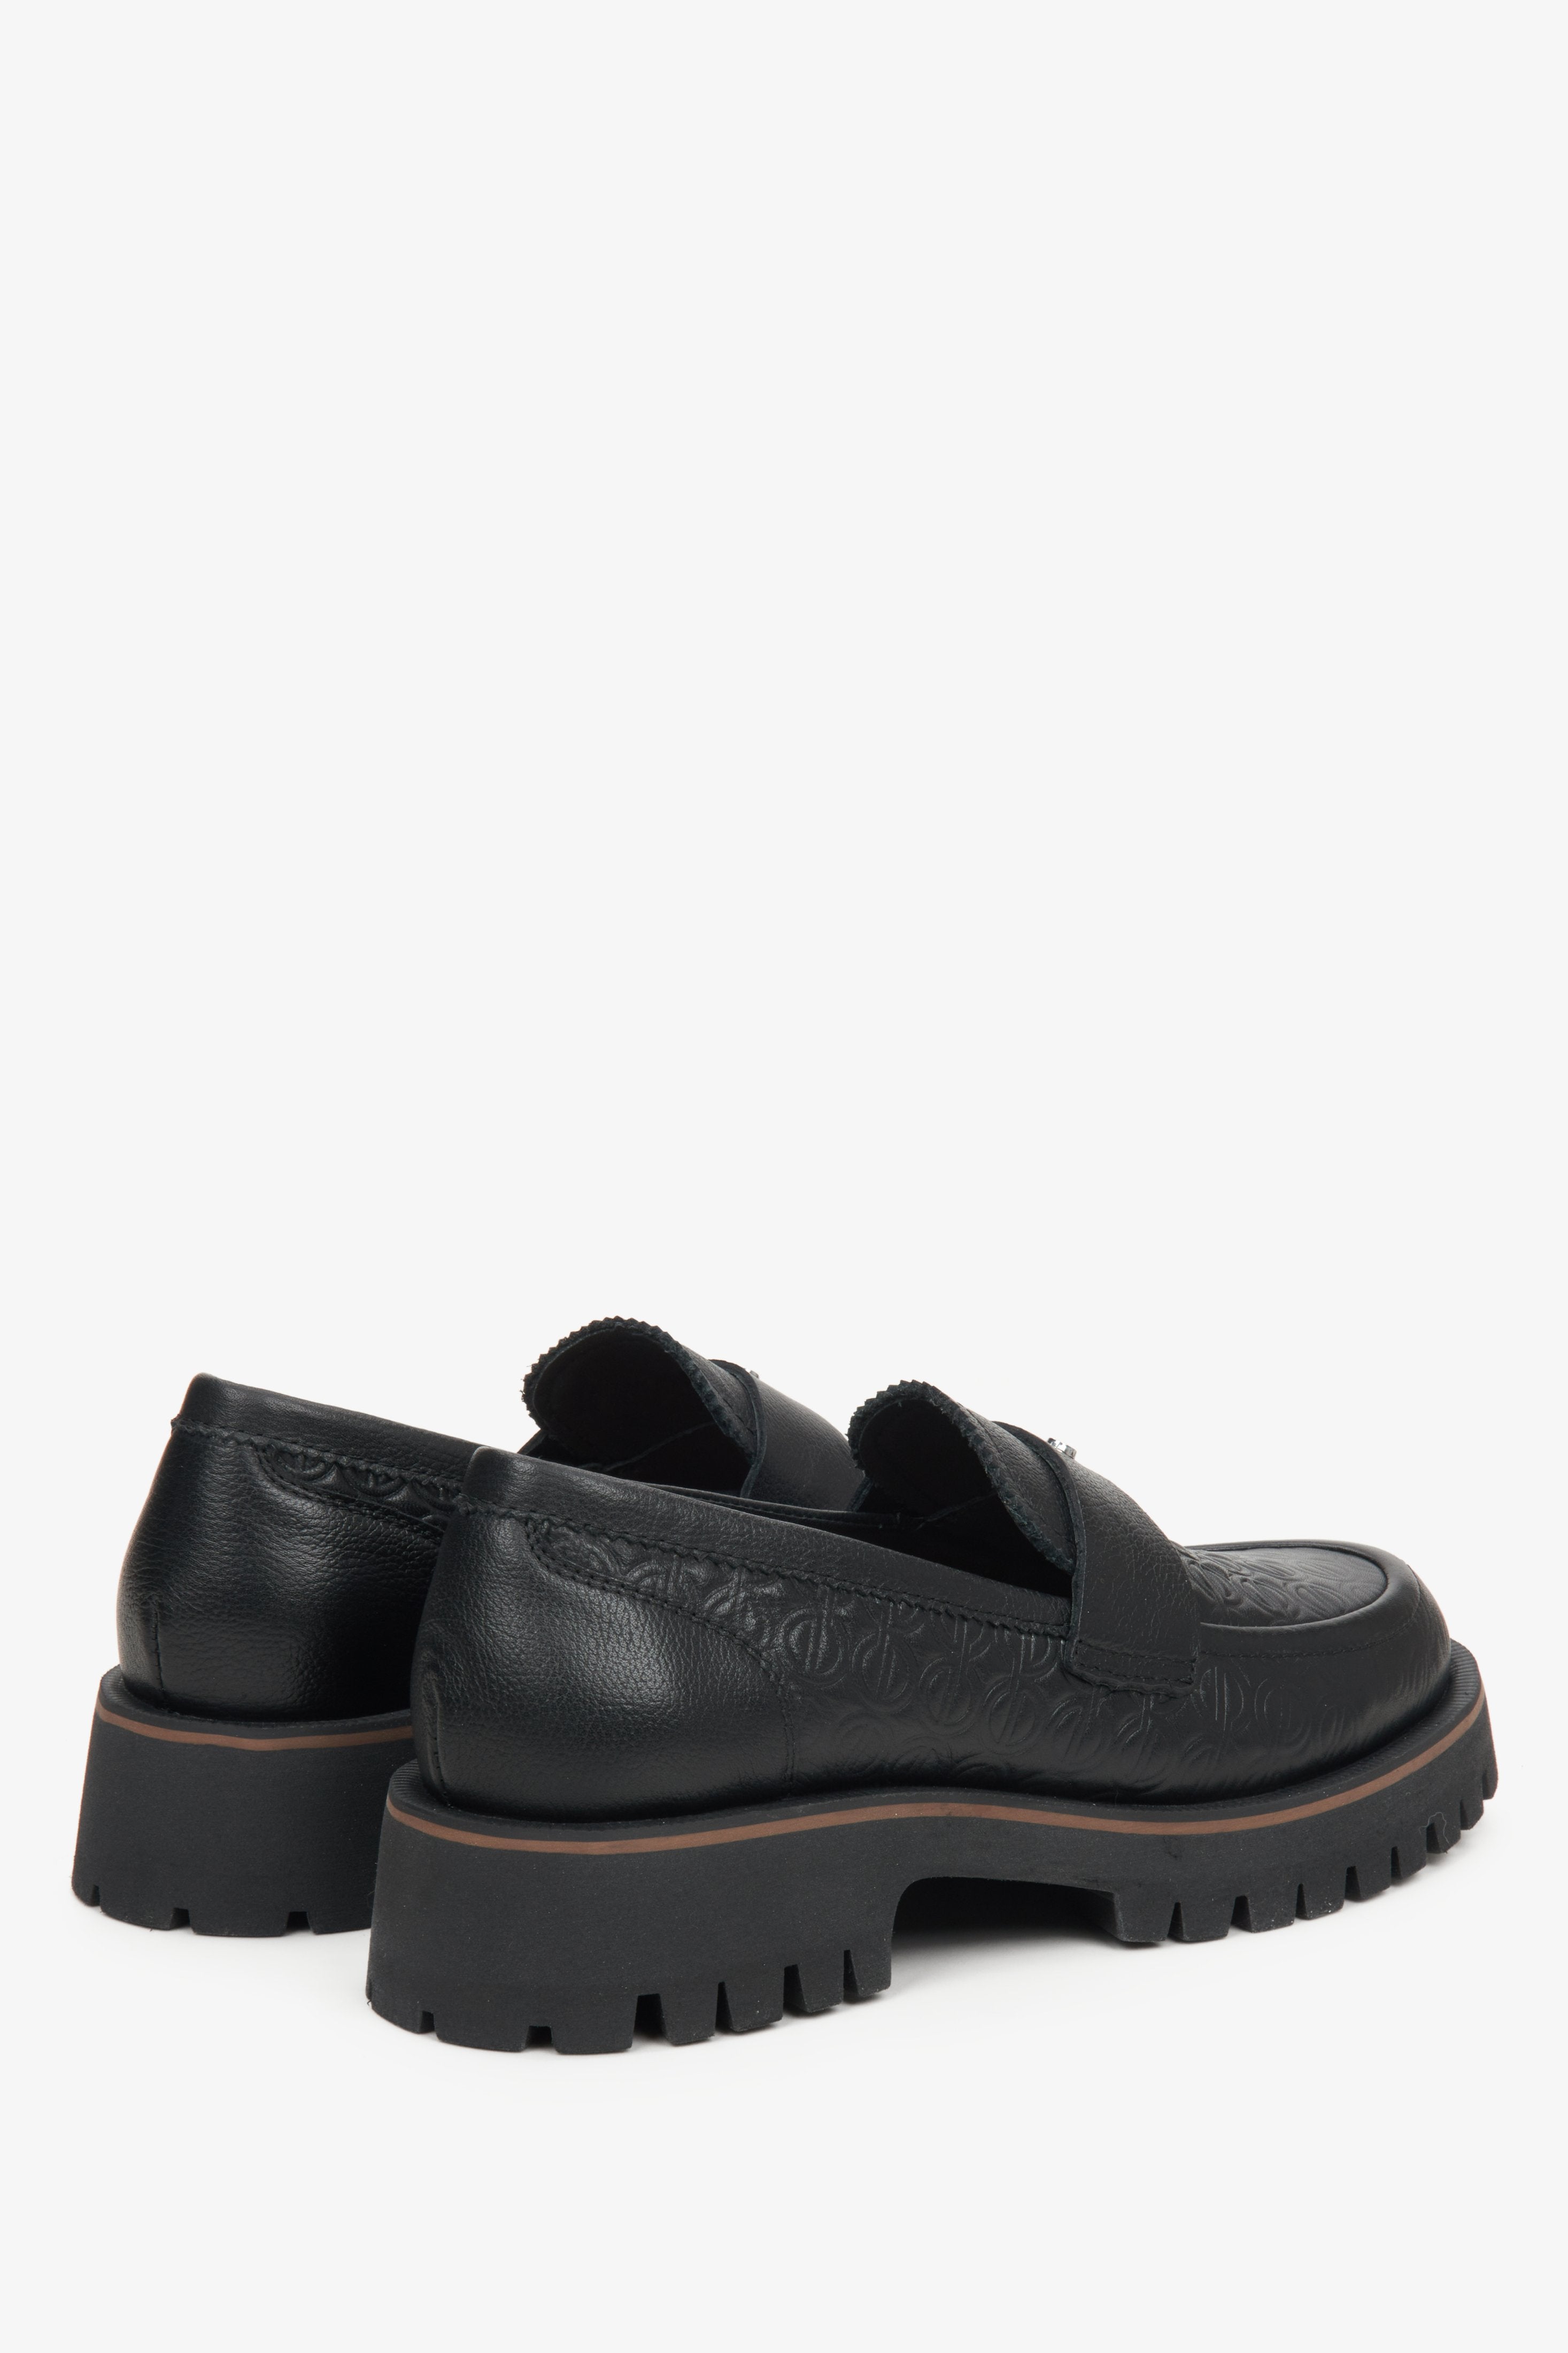 Czarne skórzane loafersy damskie Estro - zbliżenie na zapiętek i linię boczną buta.